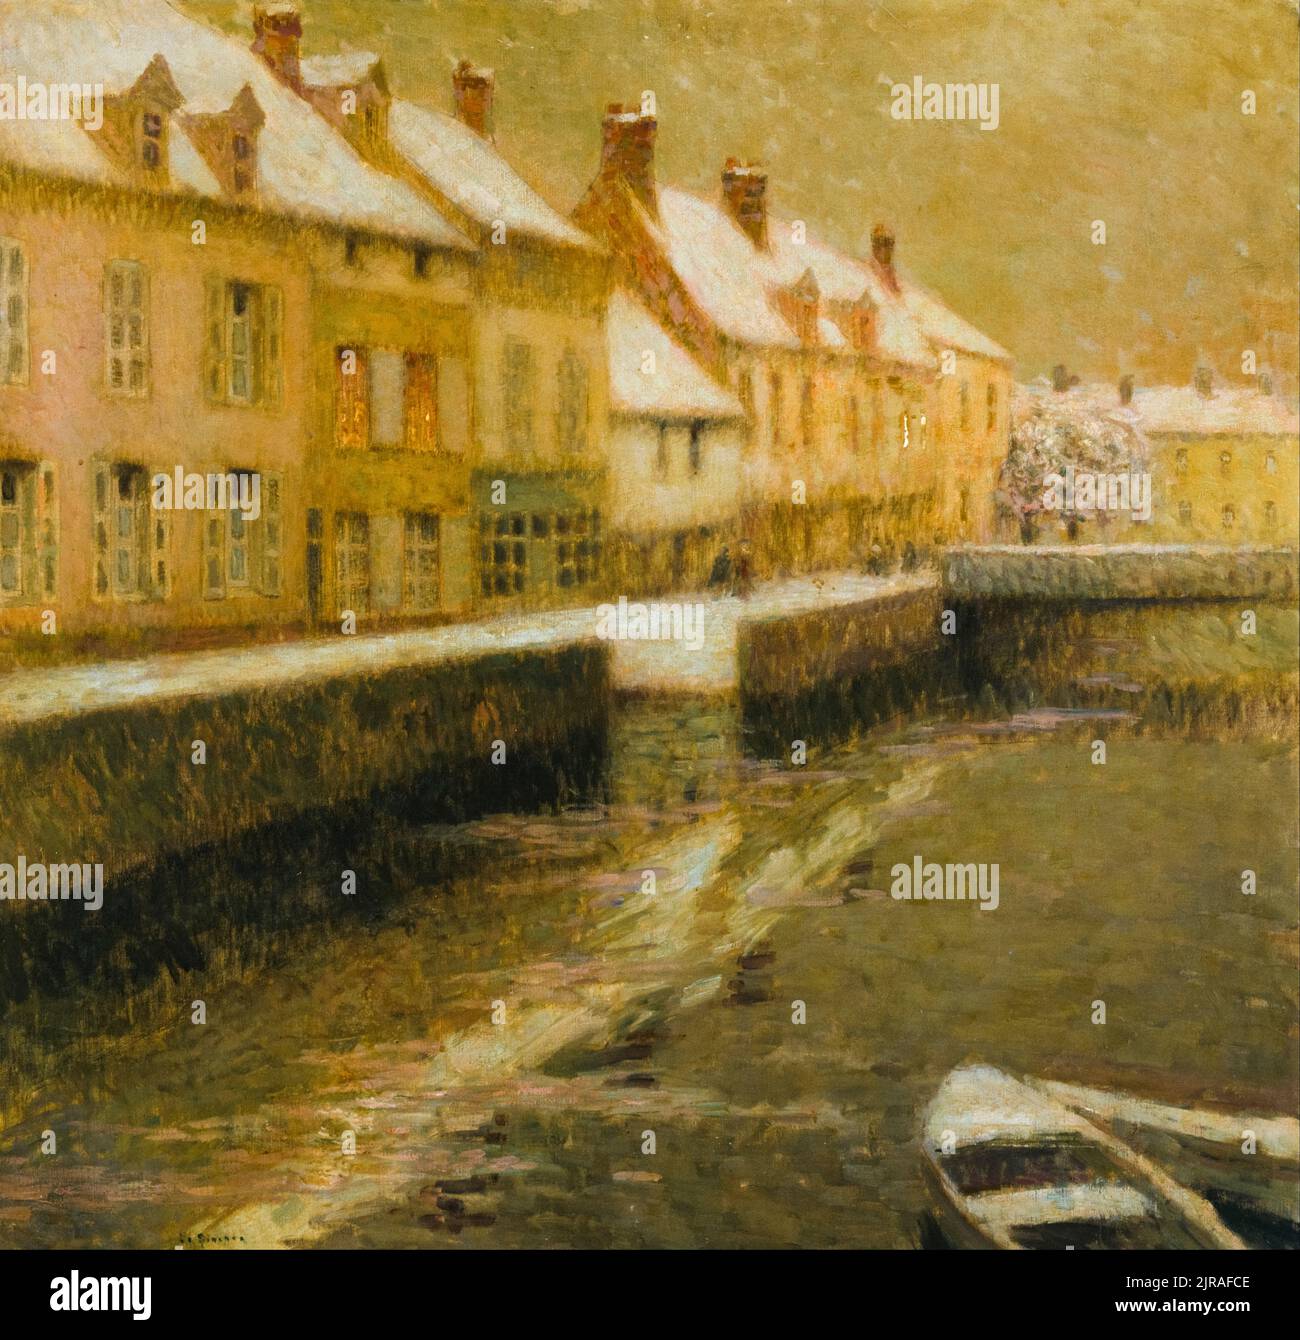 Dipinto di Henri le Sidaner, canale di Bruges, Inverno, olio su tela, 1899 Foto Stock